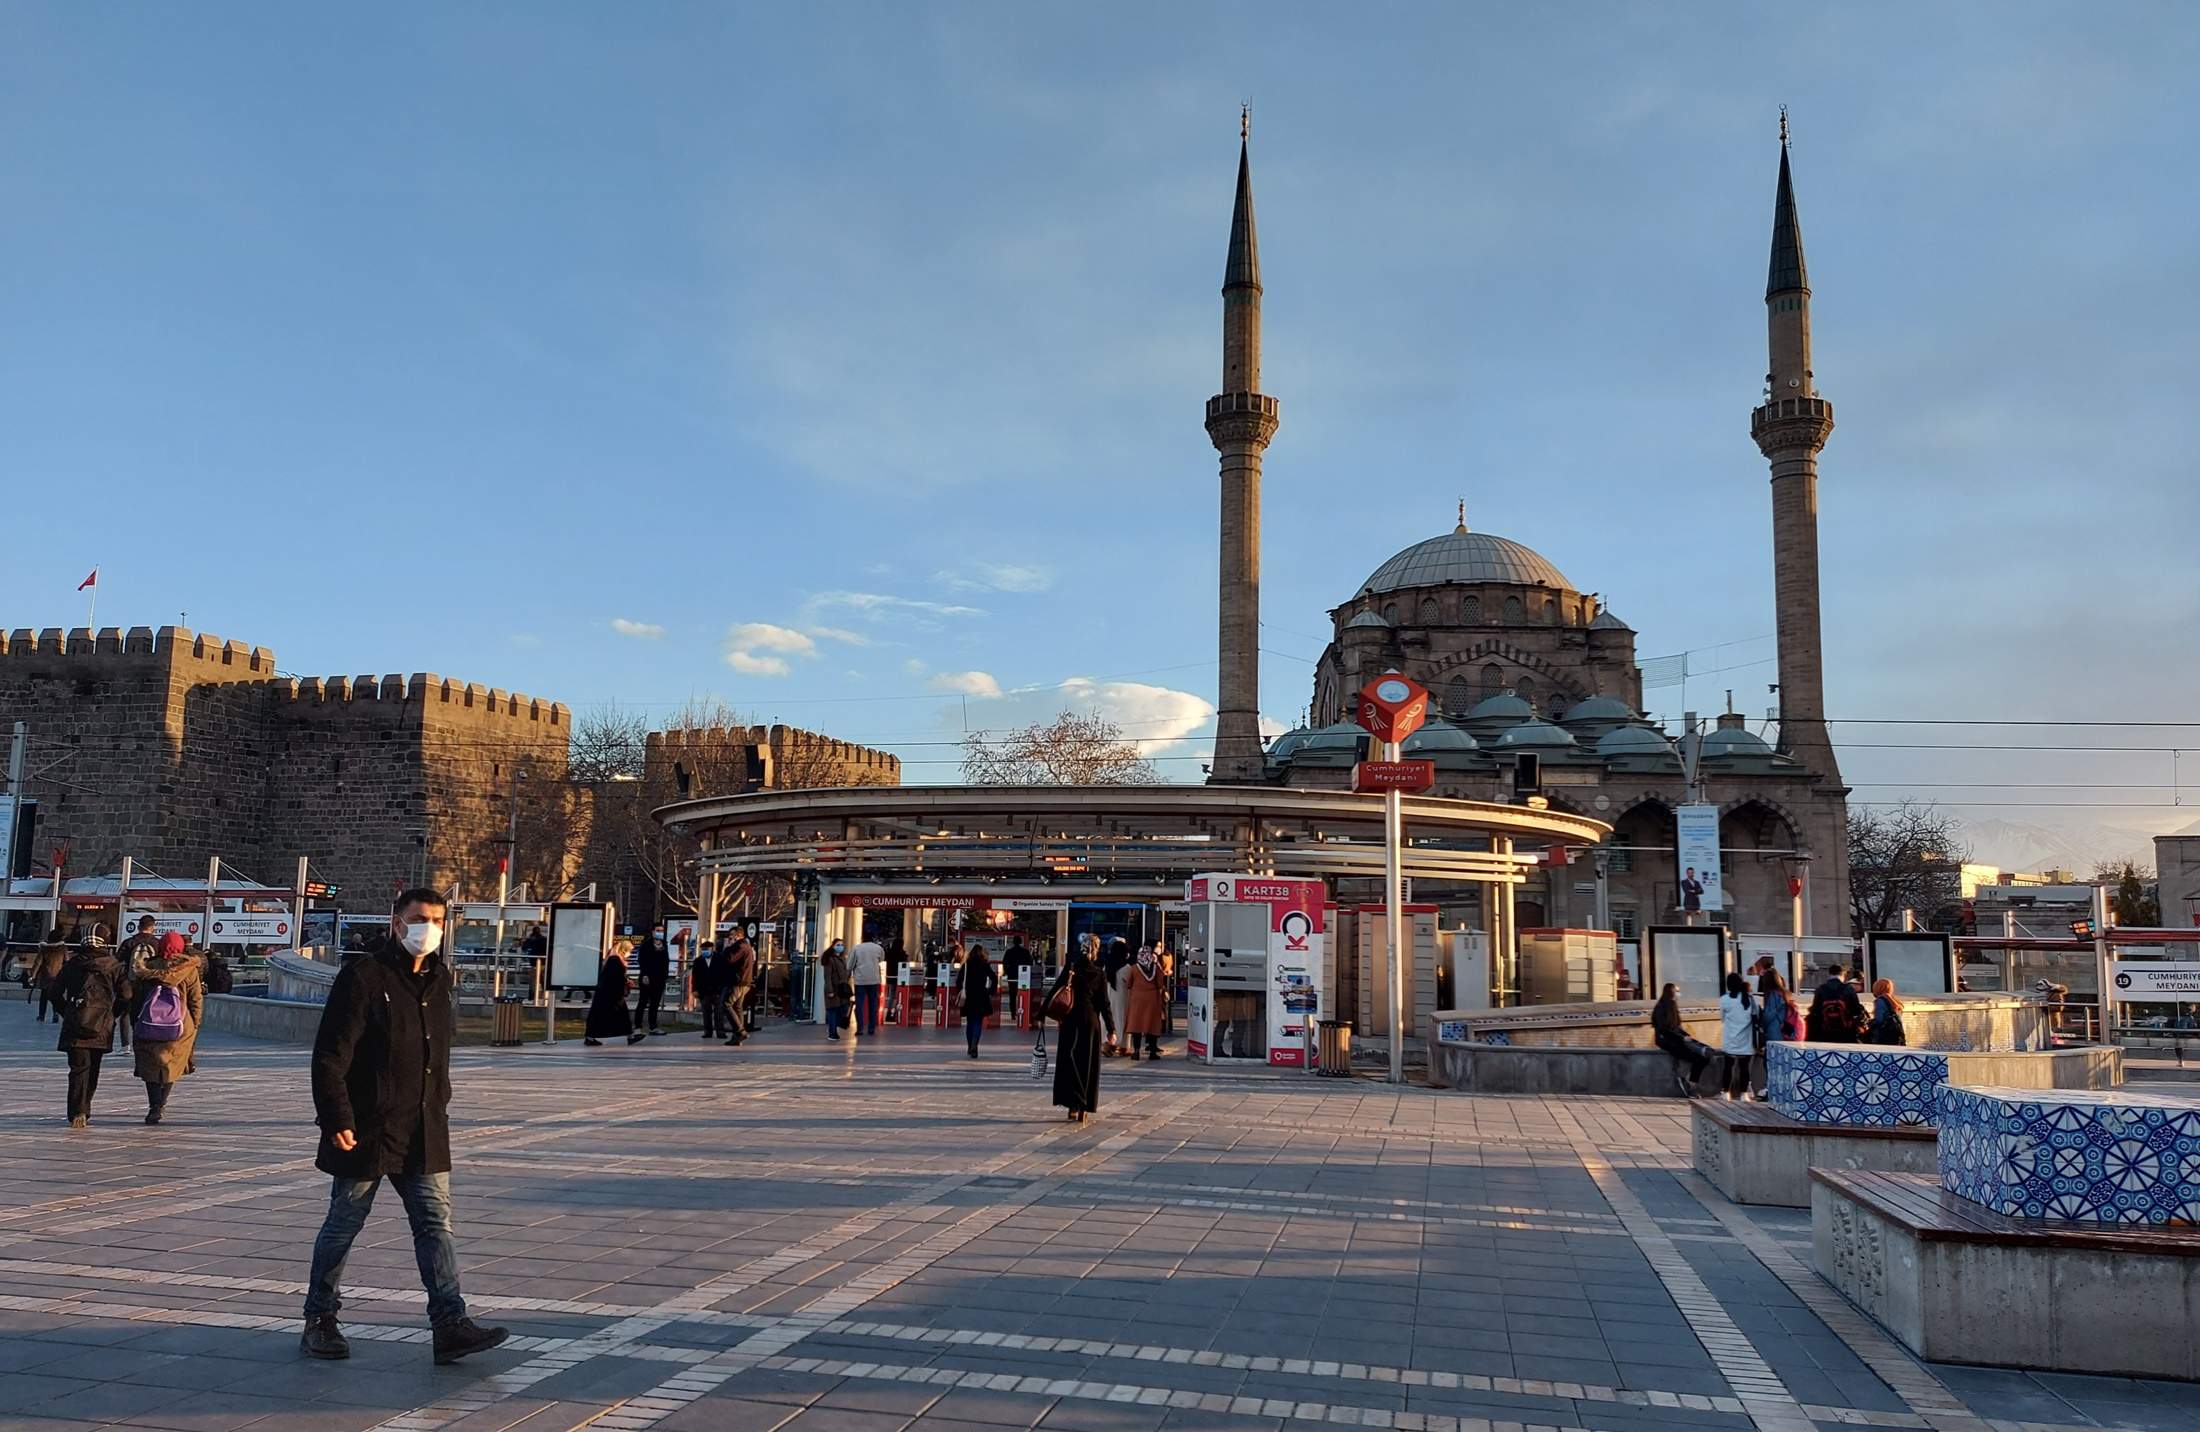 Slika 2 - Trg.jpg - Reportaža iz Turske: Nova turistička realnost, VIP iskustvo